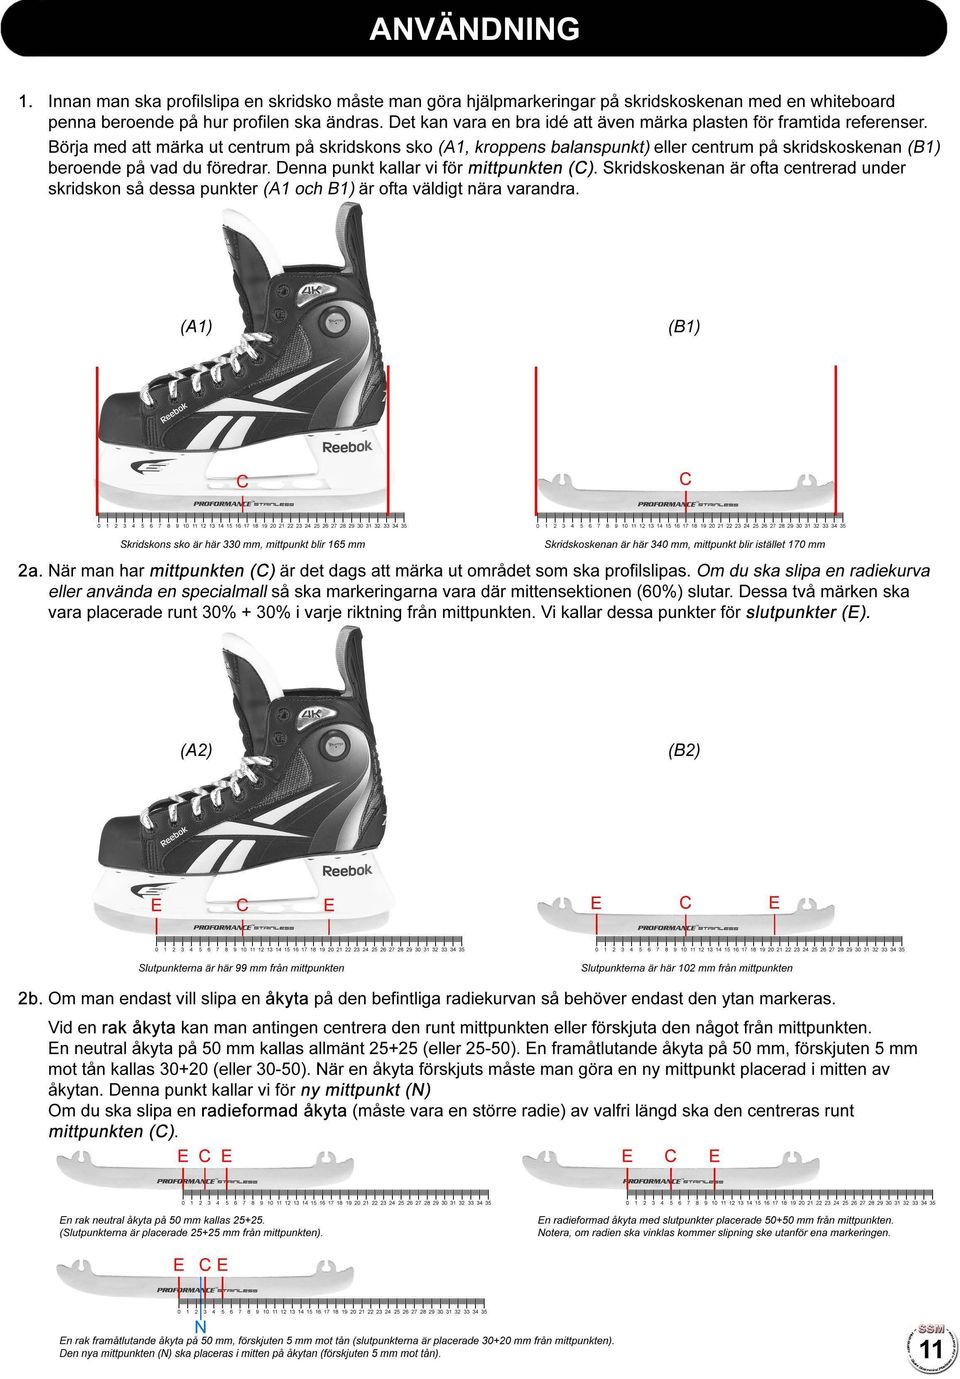 Börja med att märka ut centrum på skridskons sko (A 1, kroppens balanspunkt) eller centrum på skridskoskenan (B 1) beroende på vad du föredrar. Denna punkt kallar vi för mittpunkten (C).